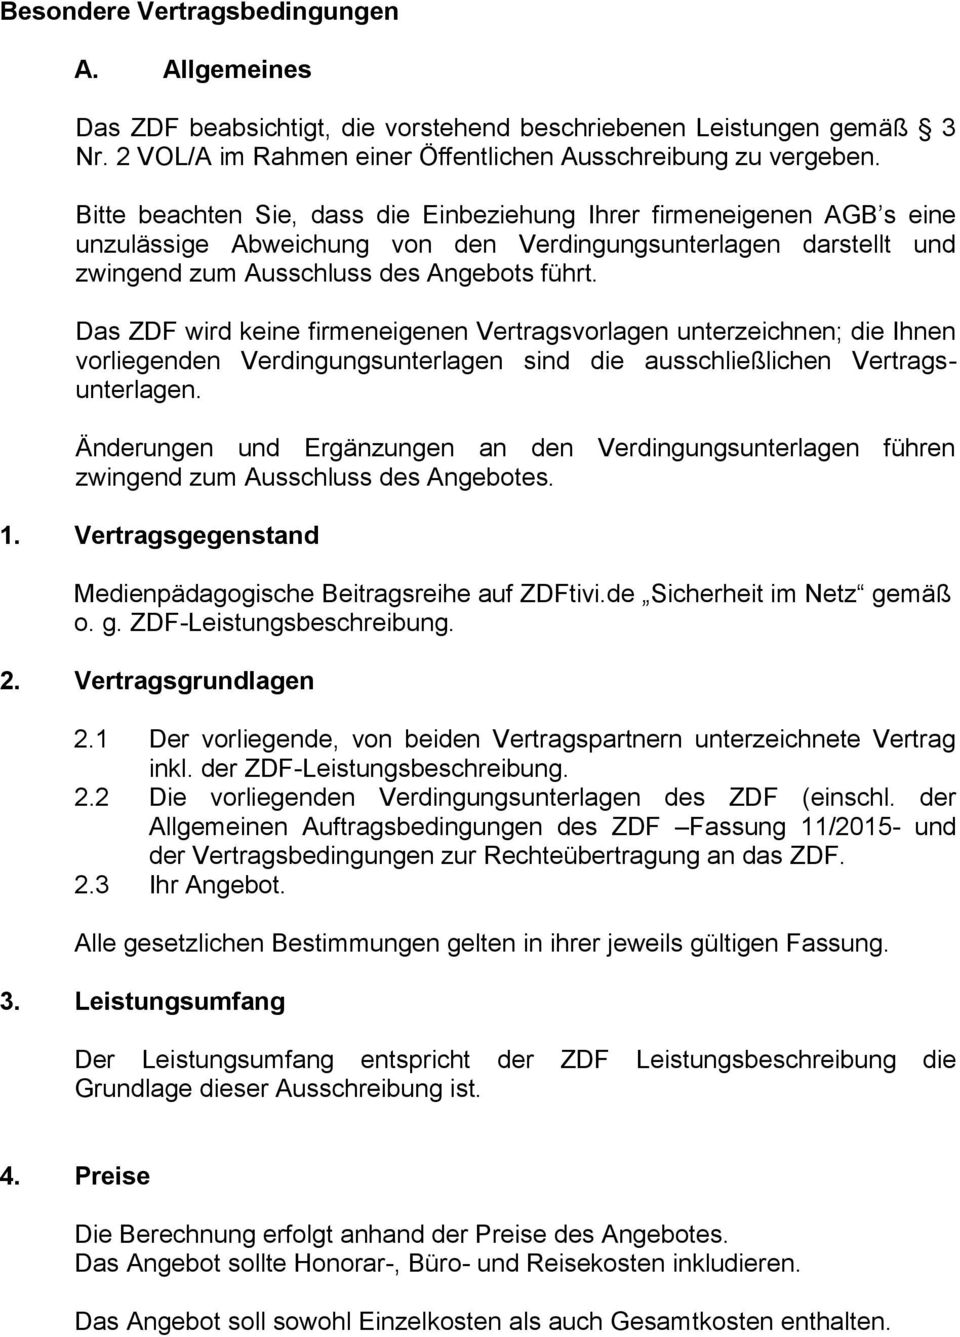 Das ZDF wird keine firmeneigenen Vertragsvorlagen unterzeichnen; die Ihnen vorliegenden Verdingungsunterlagen sind die ausschließlichen Vertragsunterlagen.